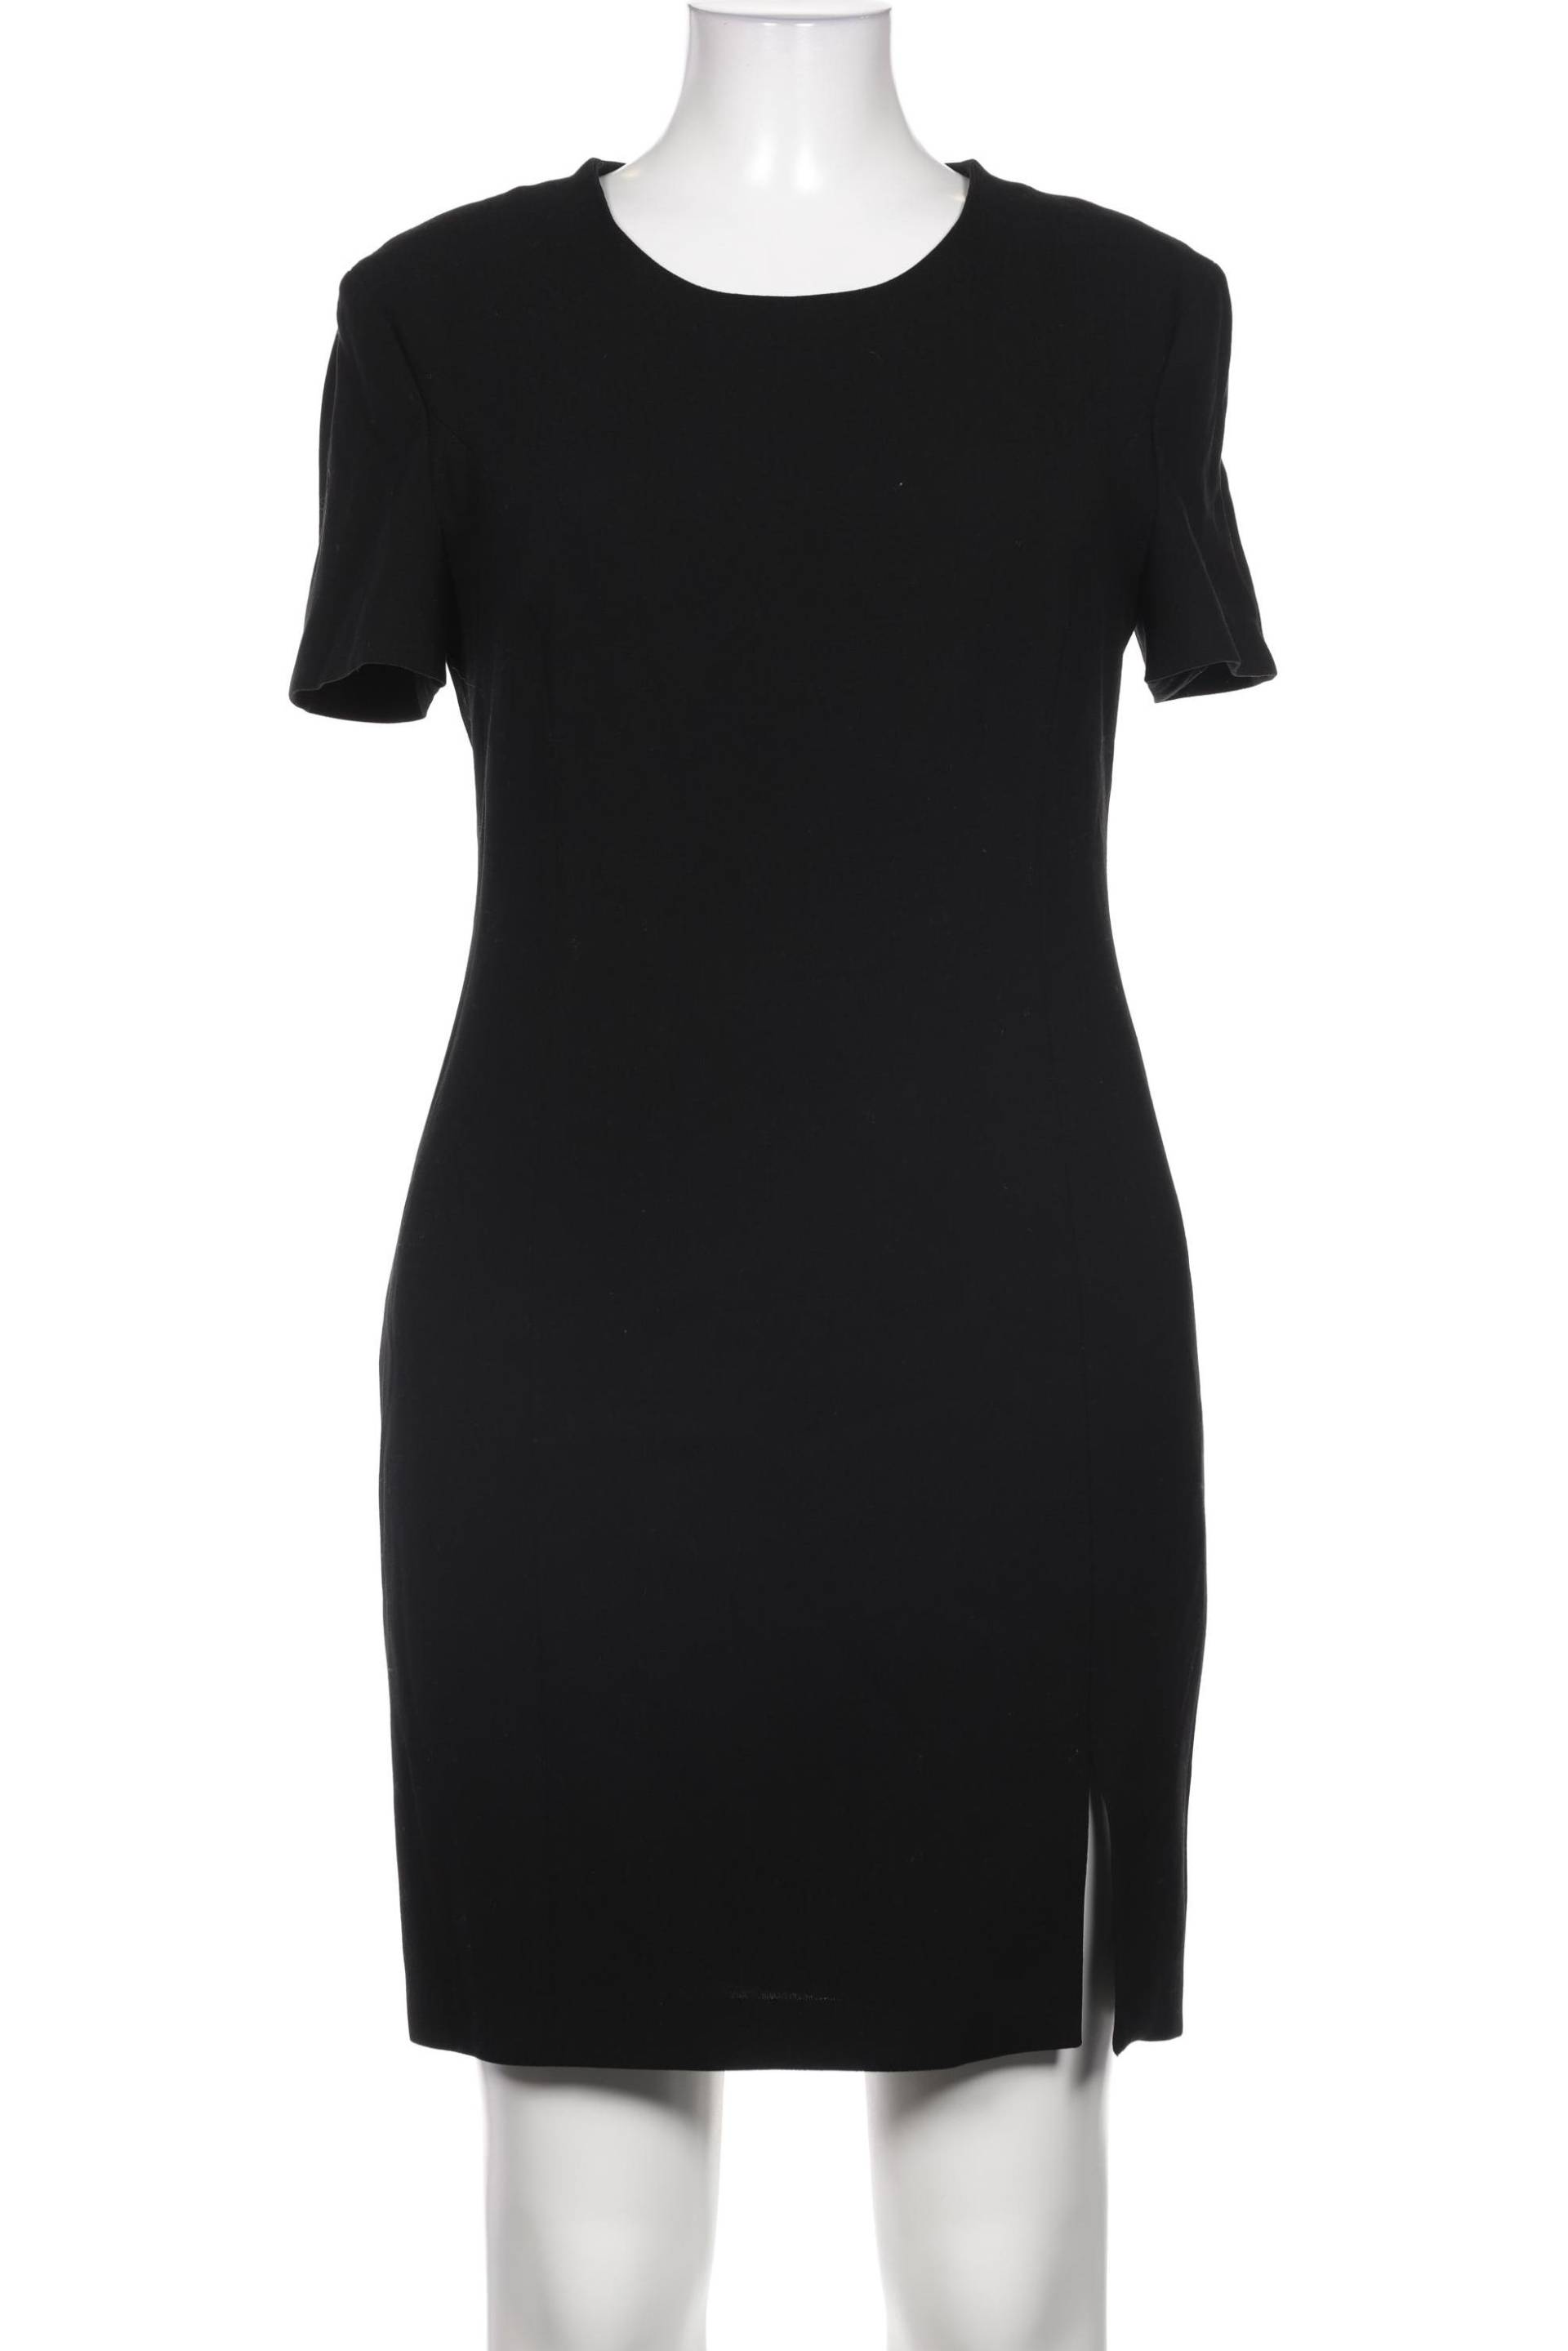 Strenesse Damen Kleid, schwarz, Gr. 42 von Strenesse